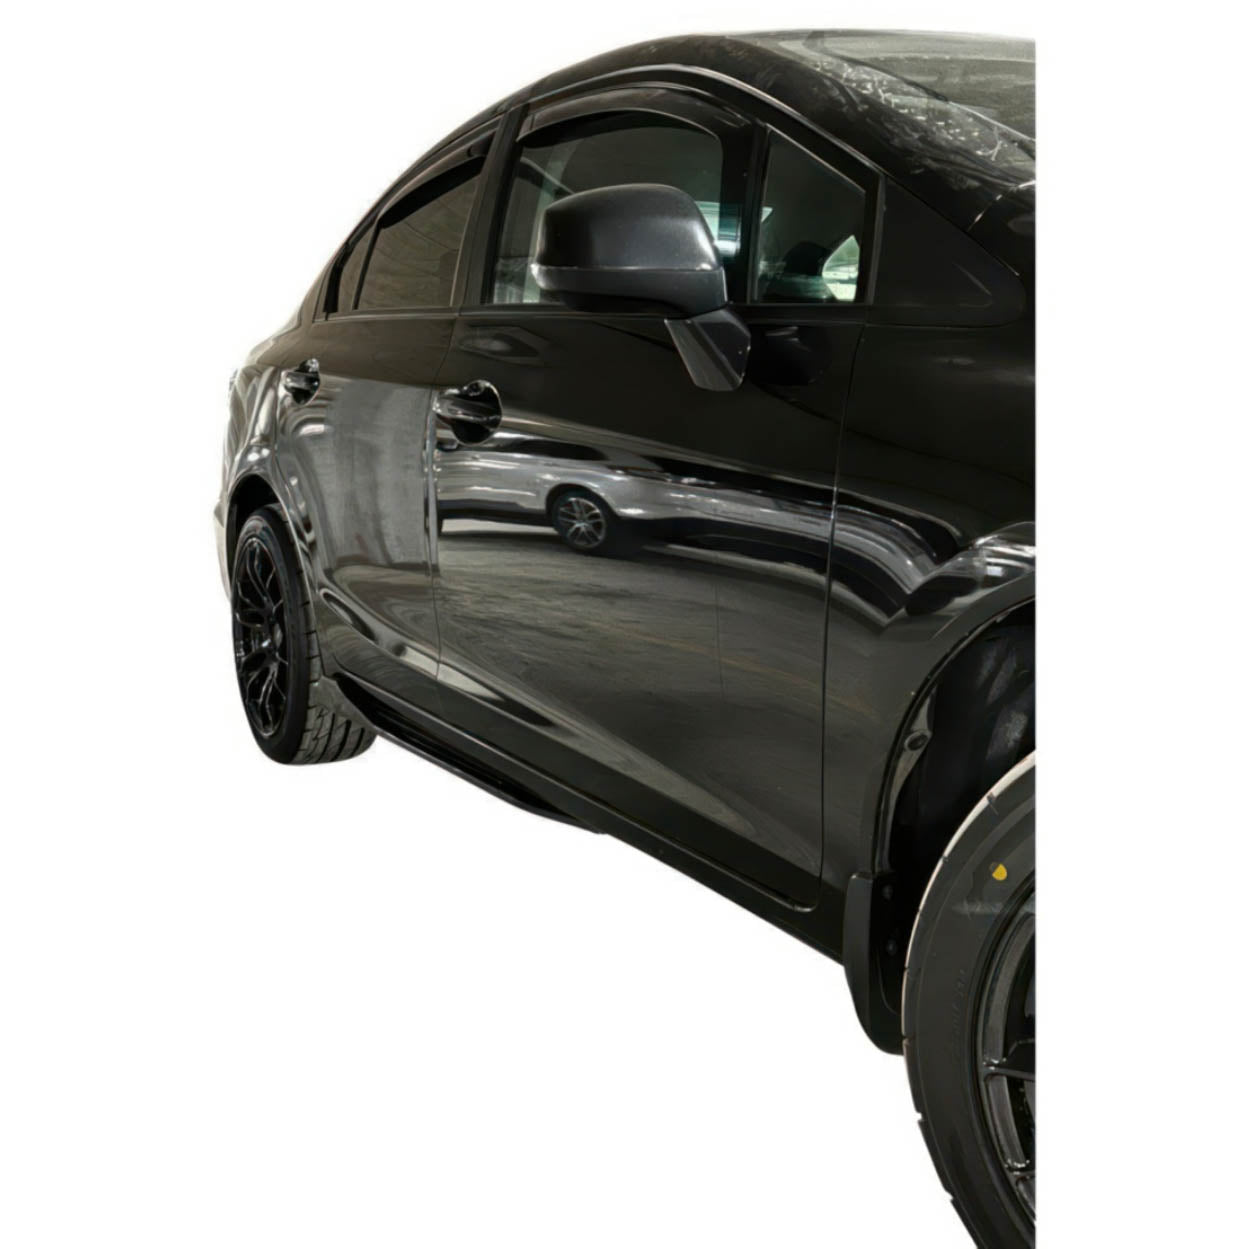 06-11 Honda Civic 8th Gen Sedan / Coupe | Front Lip Splitter | Gloss Black